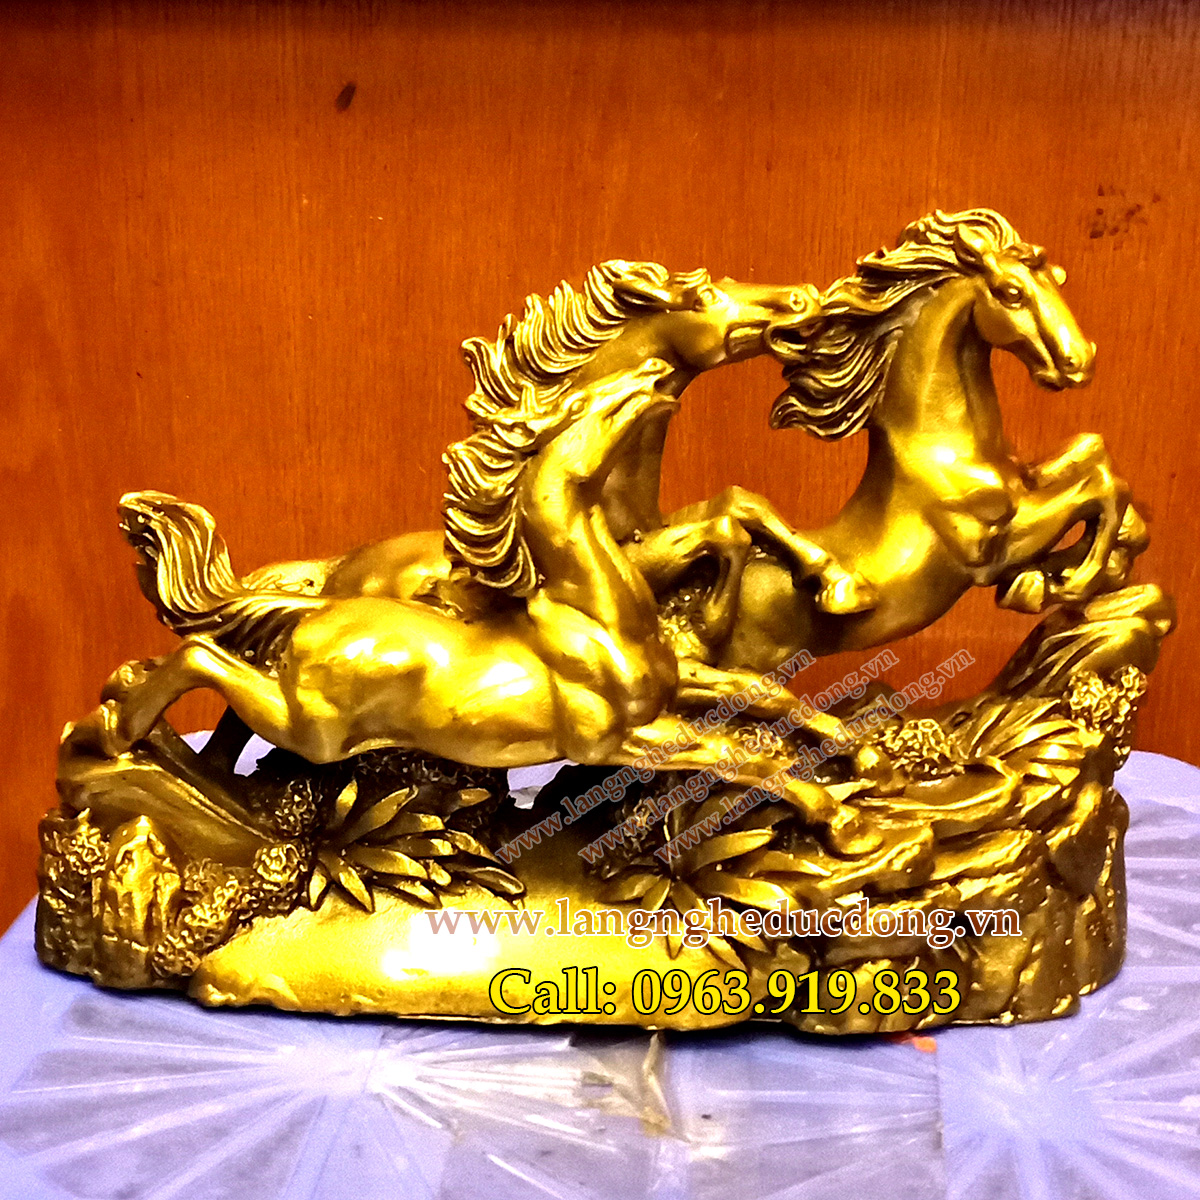 langngheducdong.vn - tượng đồng, tượng ngựa đồng, mẫu tam mã bằng đồng